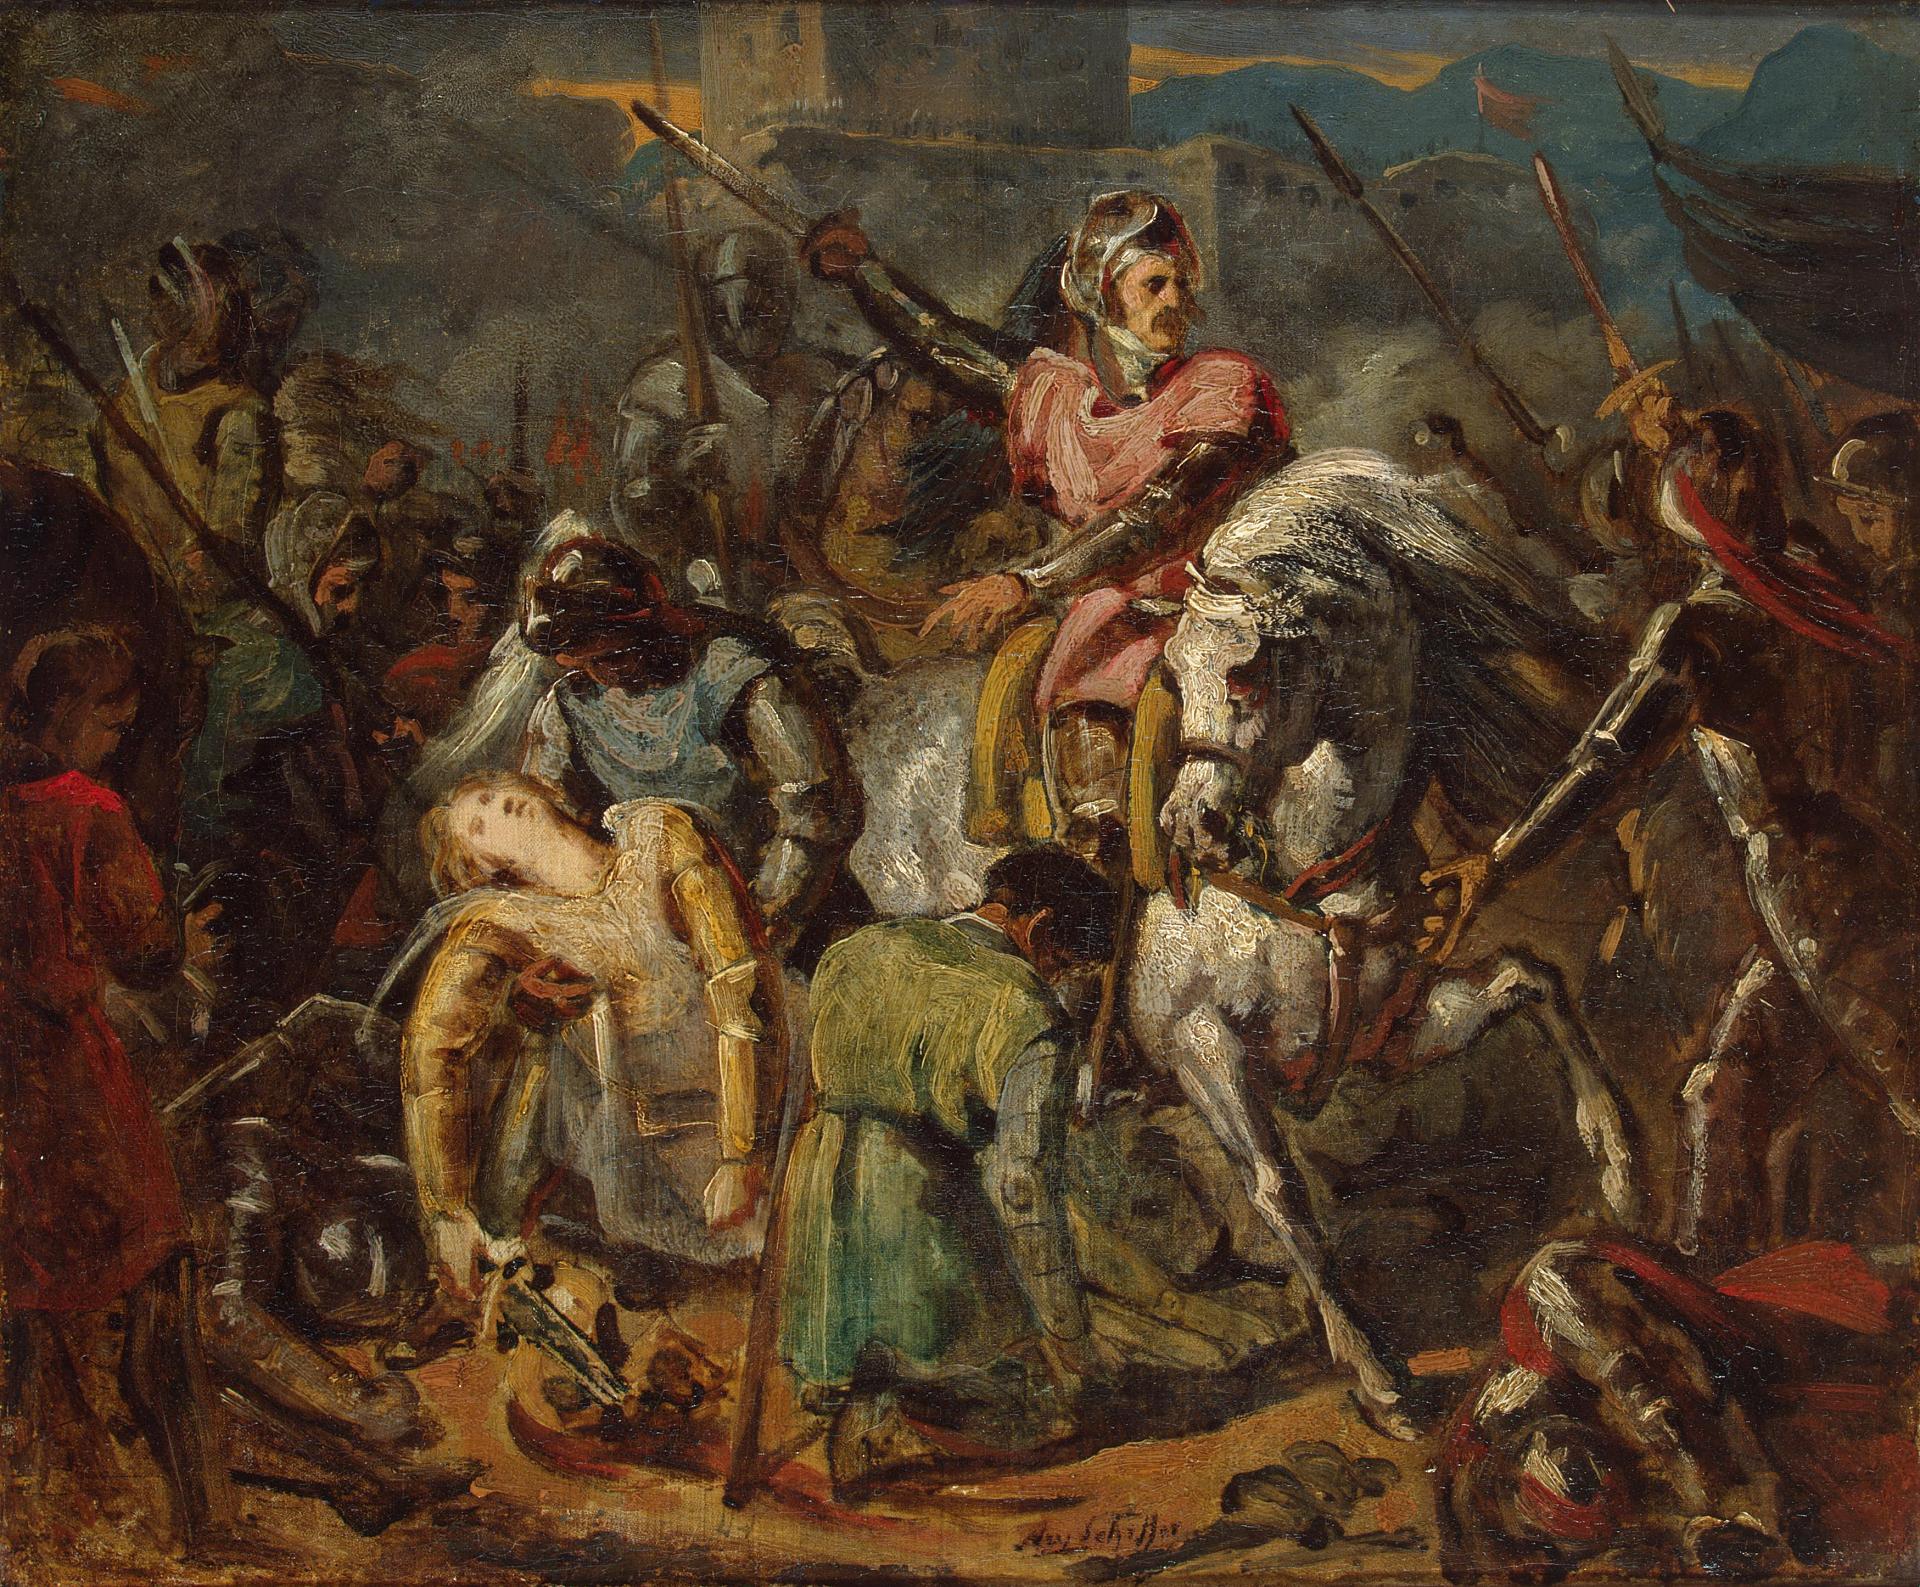 Ари Шеффер. "Смерть Гастона де Фуа в битве при Равенне 11 апреля 1512 года". Около 1824. Эрмитаж, Санкт-Петербург.